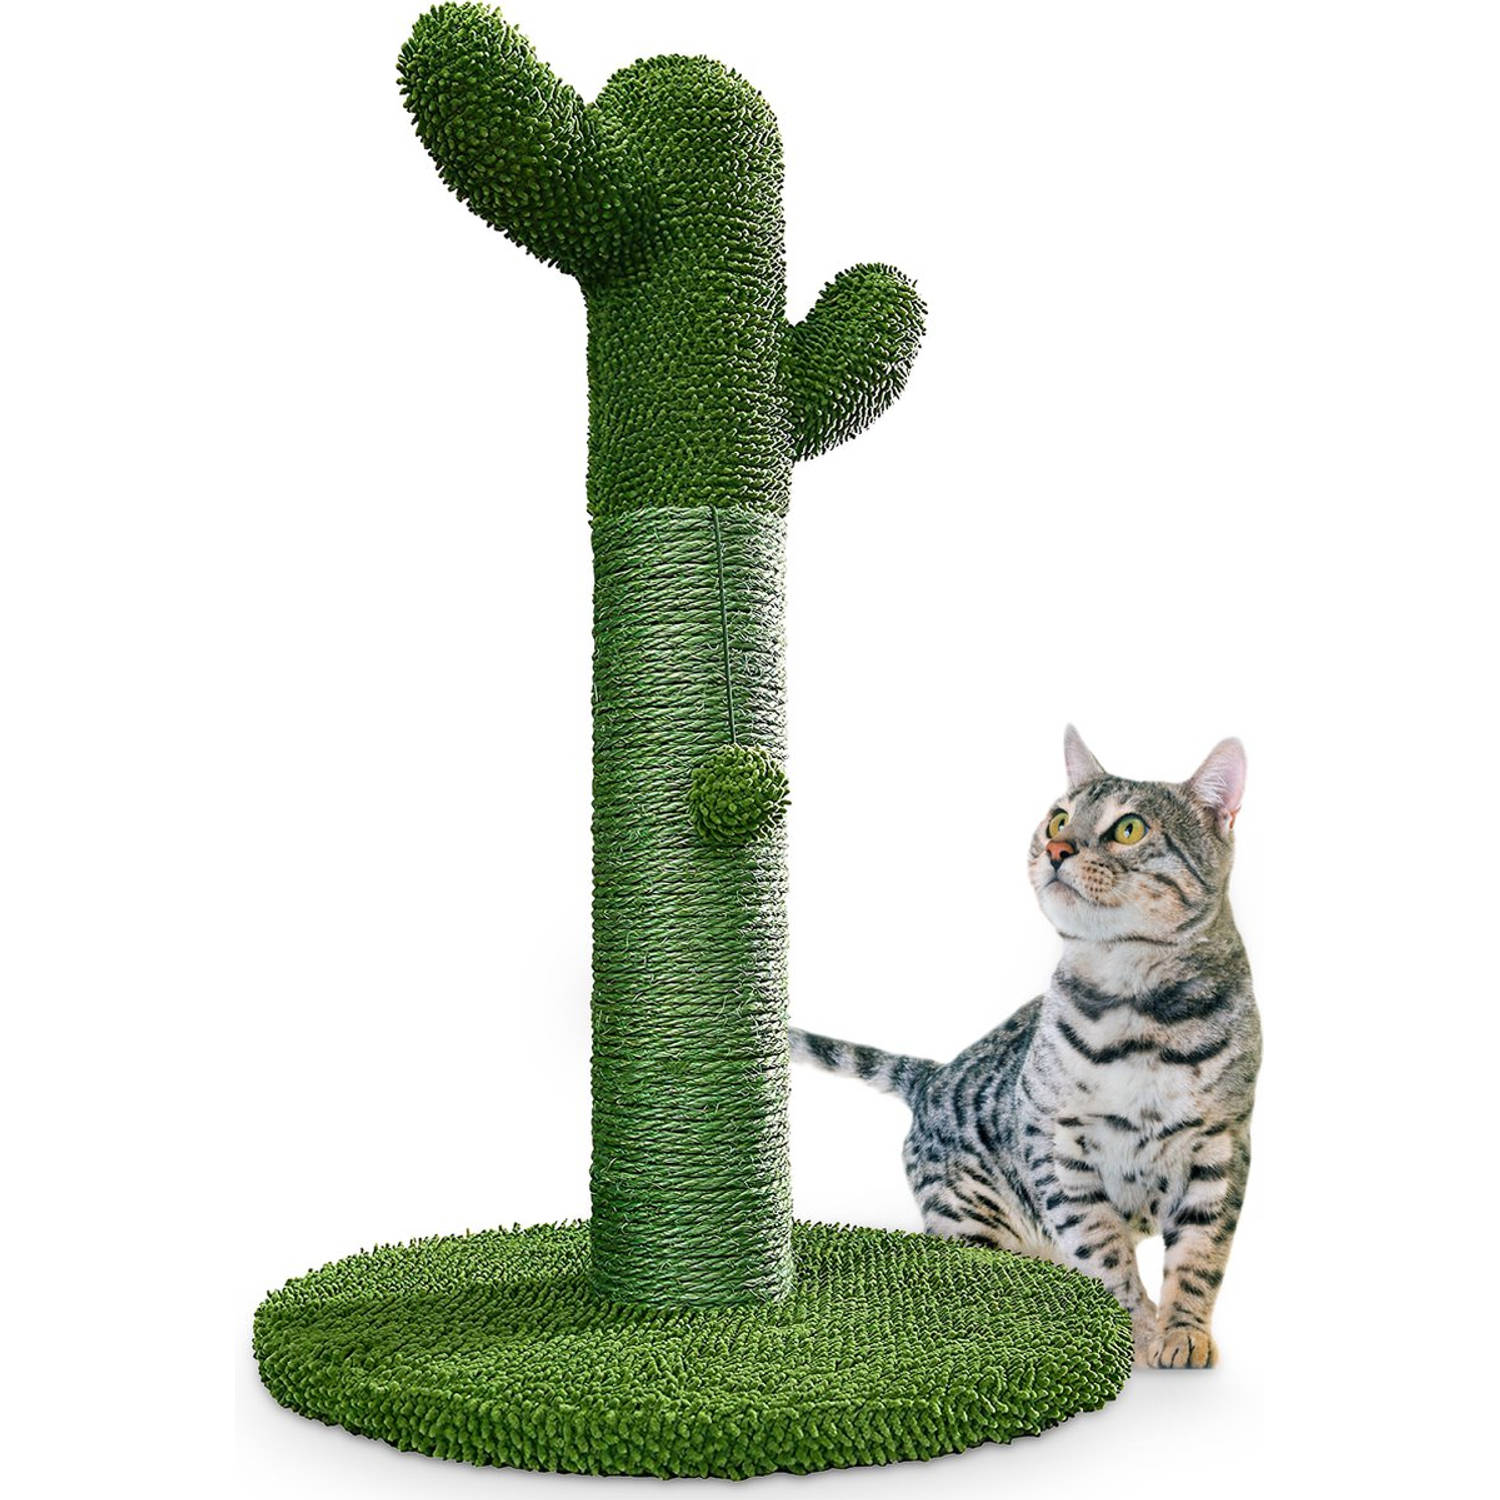 Gopets Krabpaal katten Cactus krabpaal sisal Krabplank modern design Natuurlijk krabmeubel met speel